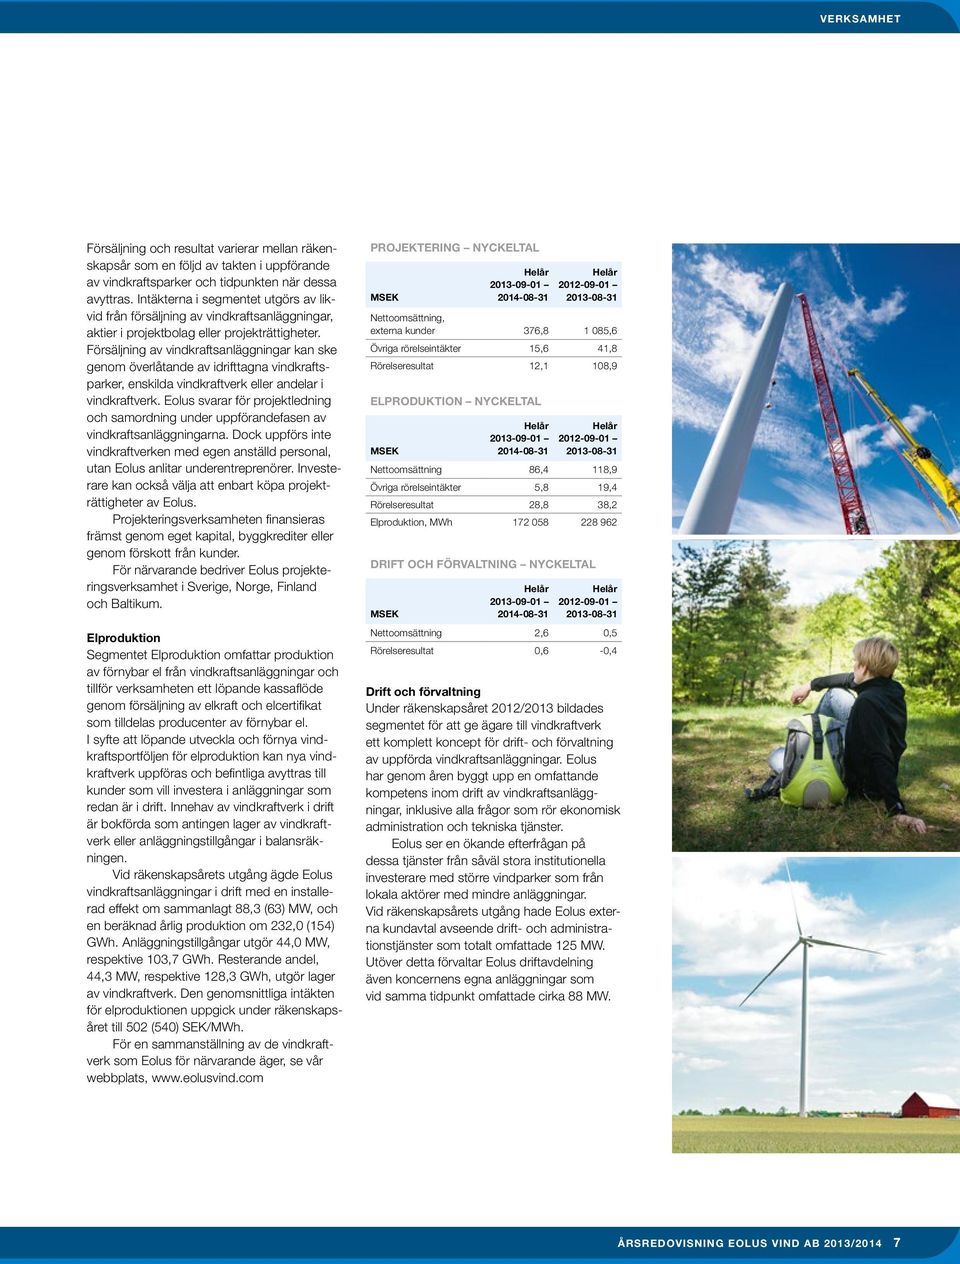 Försäljning av vindkraftsanläggningar kan ske genom överlåtande av idrifttagna vindkraftsparker, enskilda vindkraftverk eller andelar i vindkraftverk.